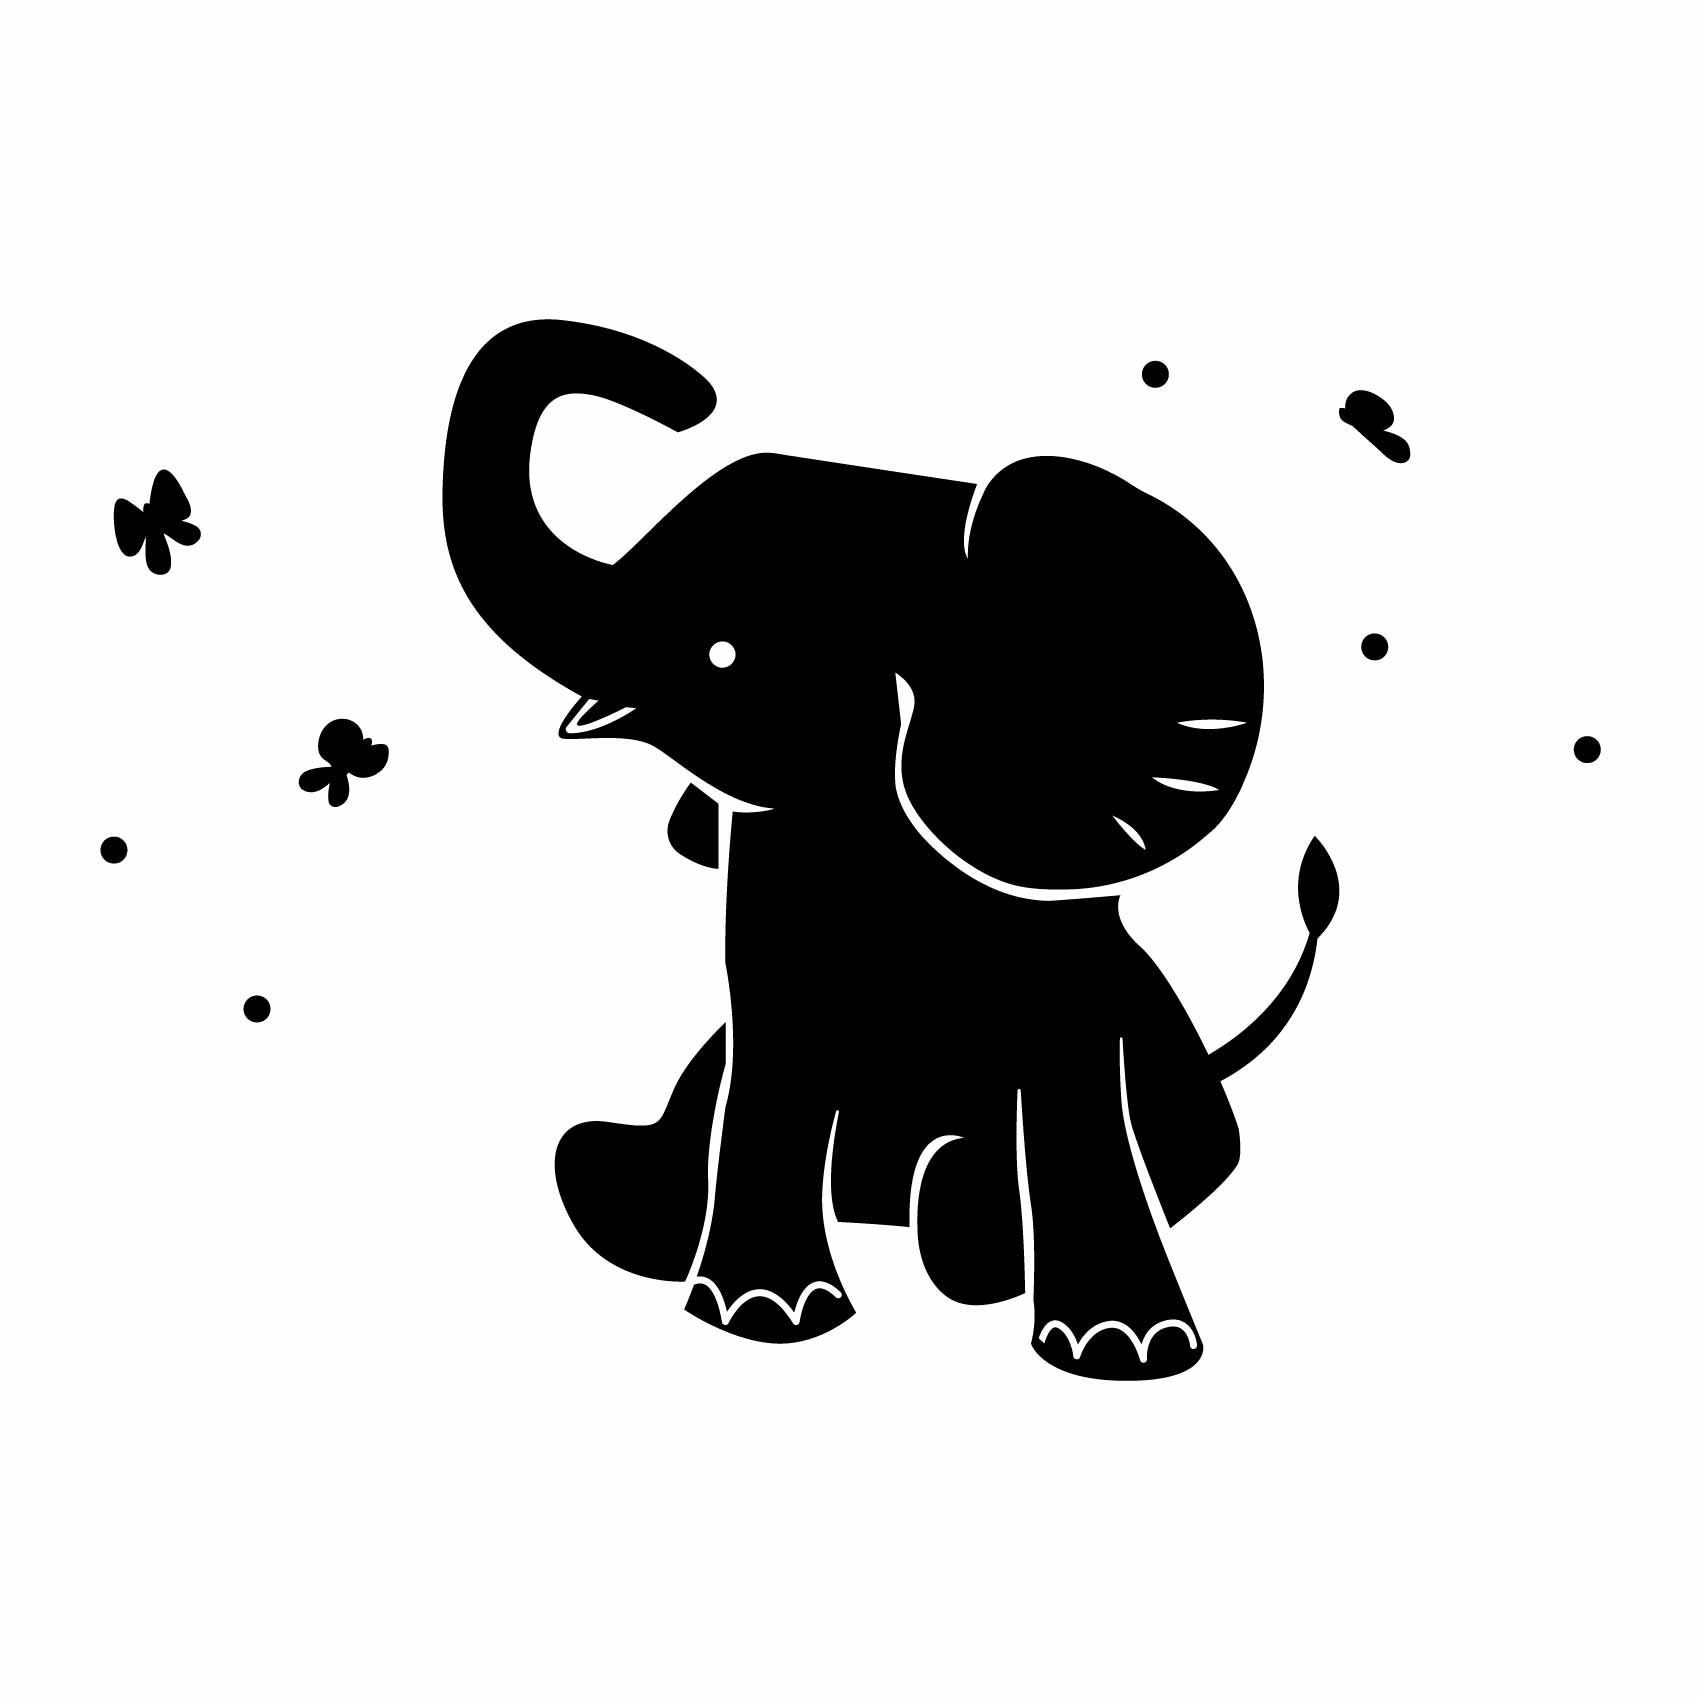 stickers-elephant-bébé-ref4elephant-stickers-muraux-elephants-autocollant-chambre-deco-sticker-mural-éléphant-enfant-(2)